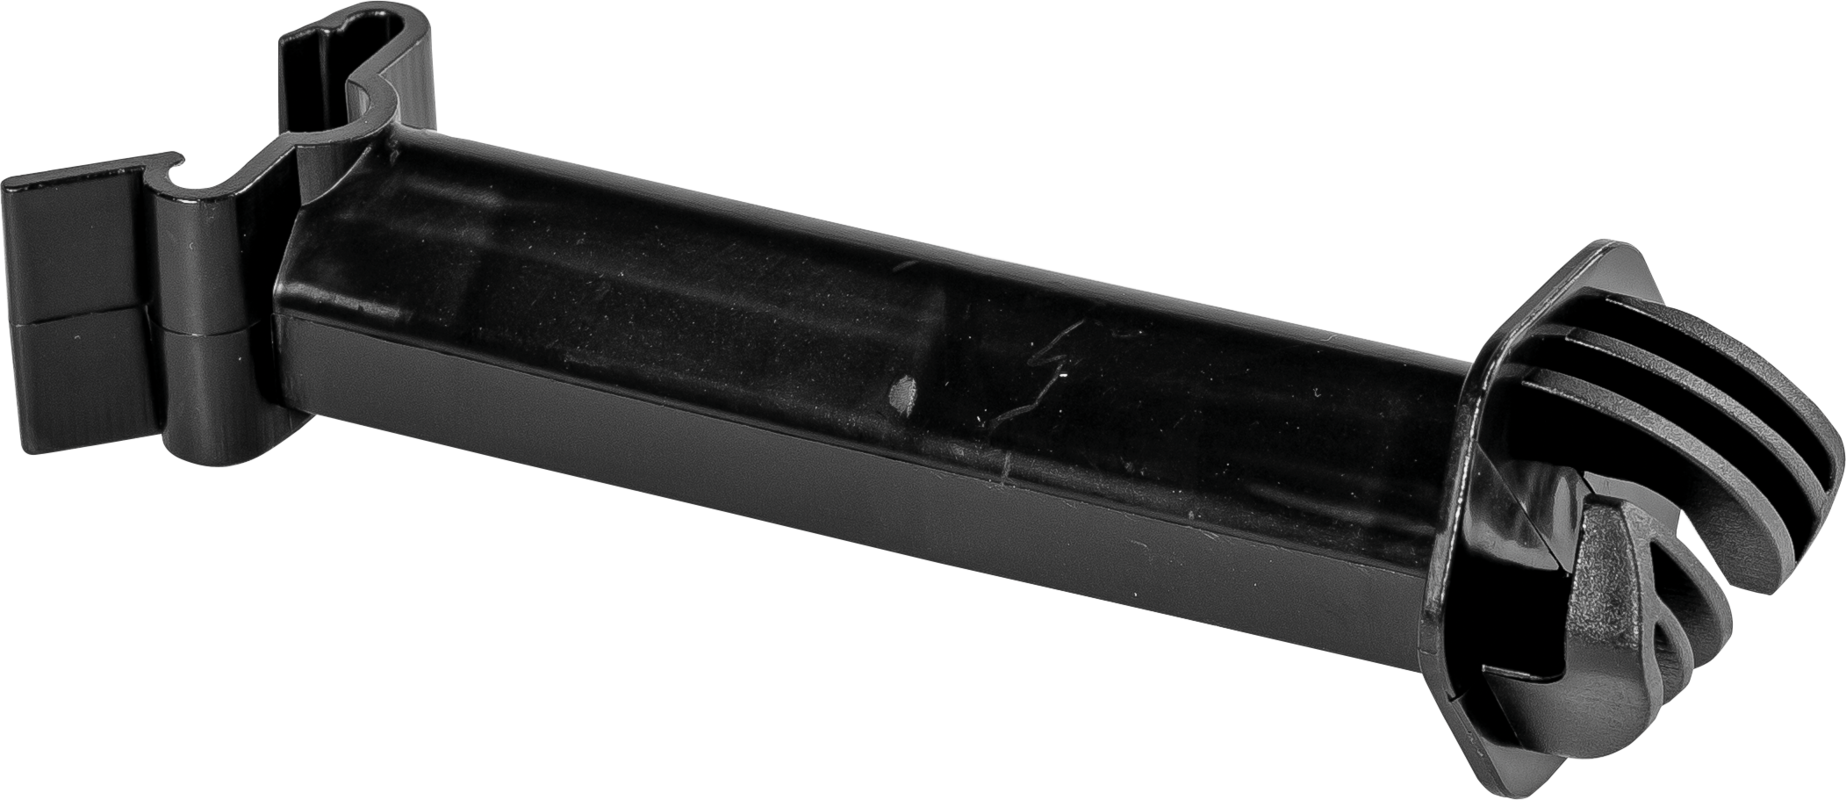 Afstandsisolator voor T-paal, zwart voor draad / kunststofdraad tot 6mm (25 stuk/ pak)